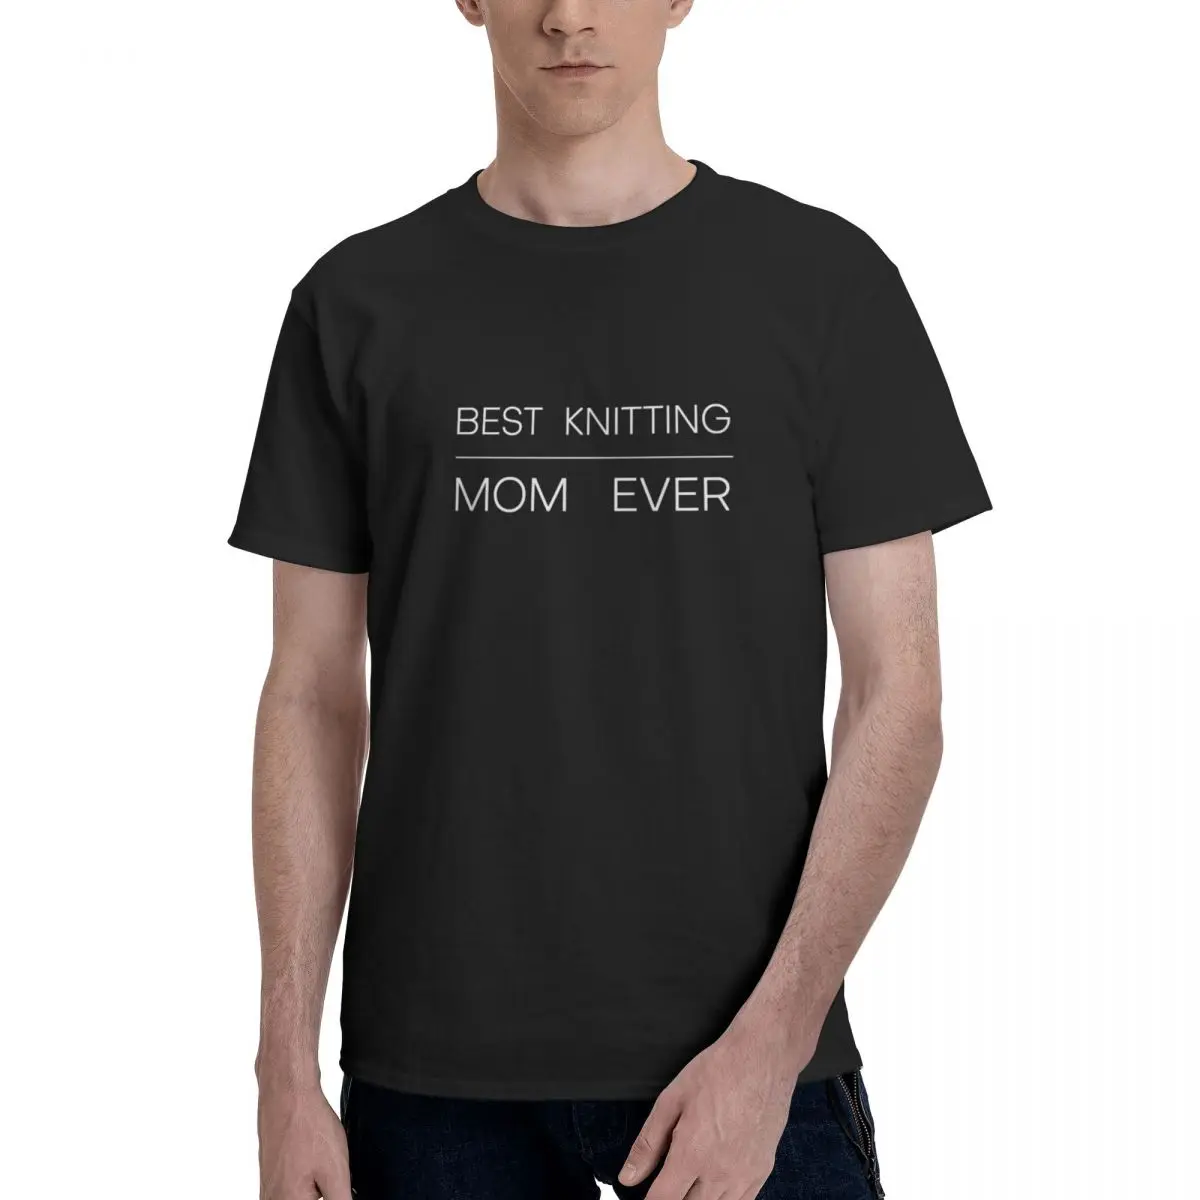 

Классическая футболка с надписью «Best KNITTING MOM ever», Белый шрифт, Мужская Базовая футболка с коротким рукавом, Забавные топы